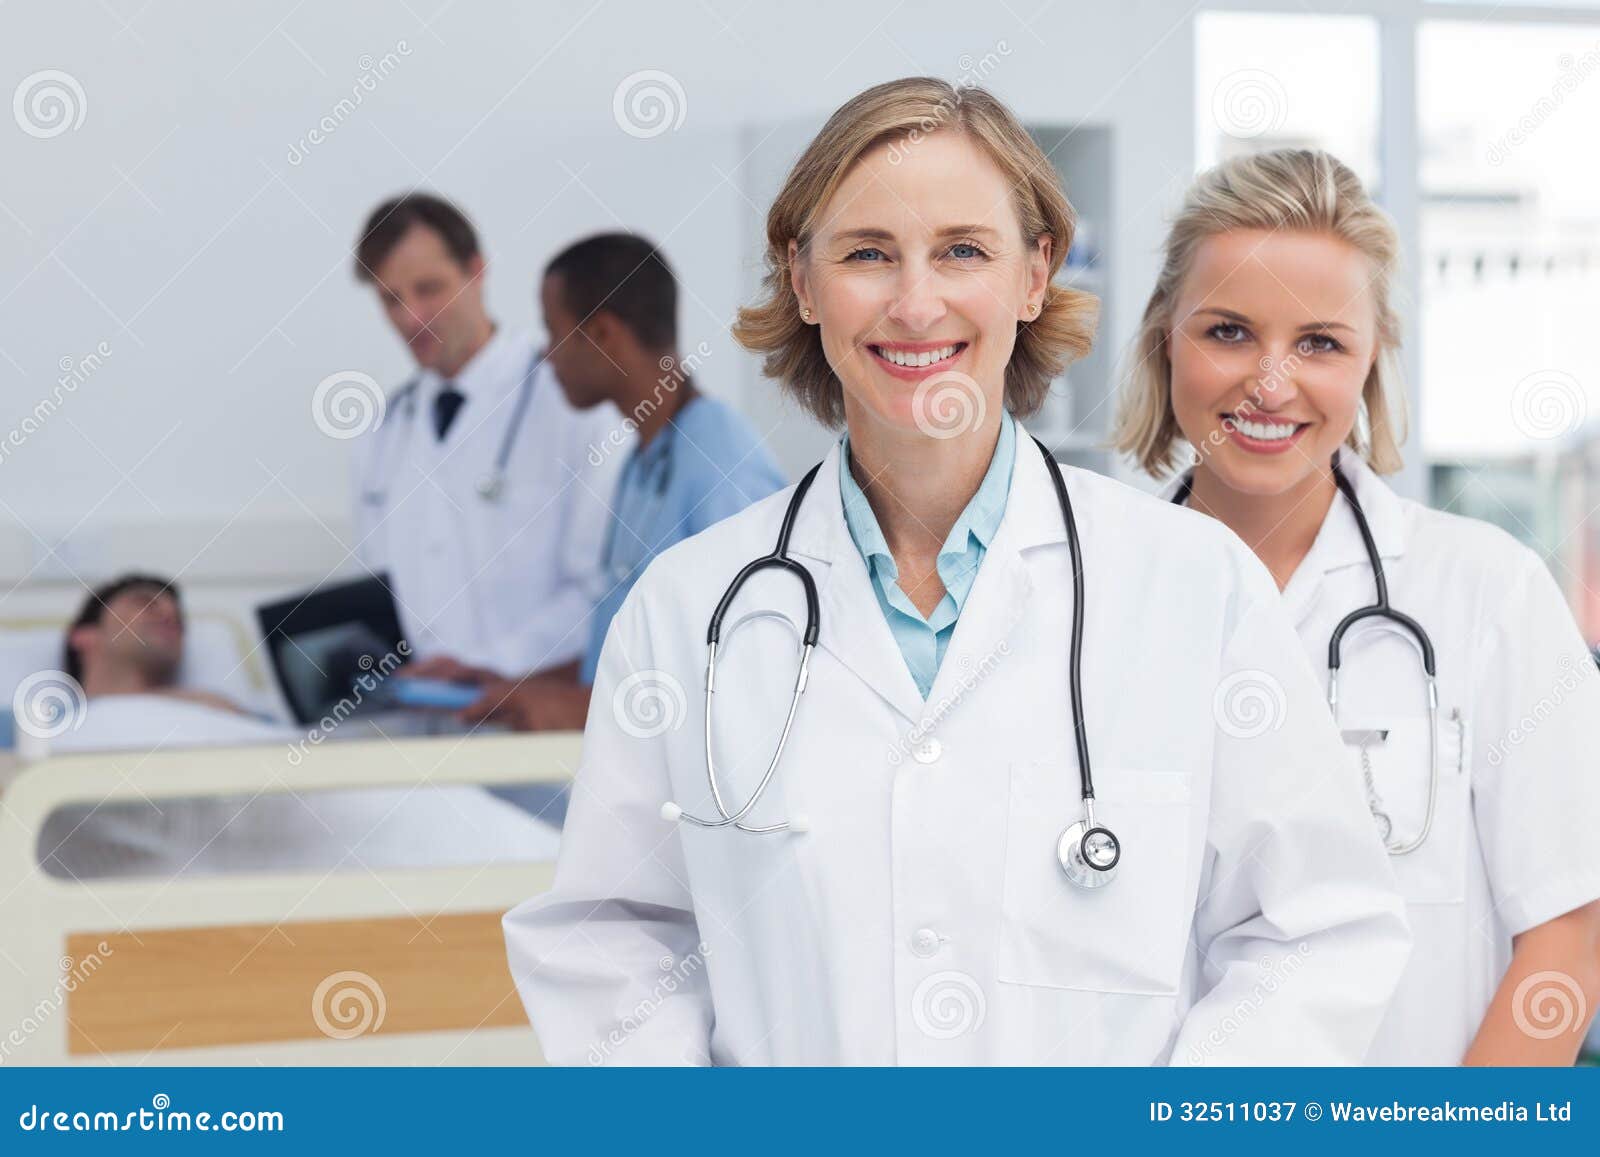 Две женщины врачи. Два врача. Два врача женщины. Группа женщин врачей. Фото два доктора женщины.